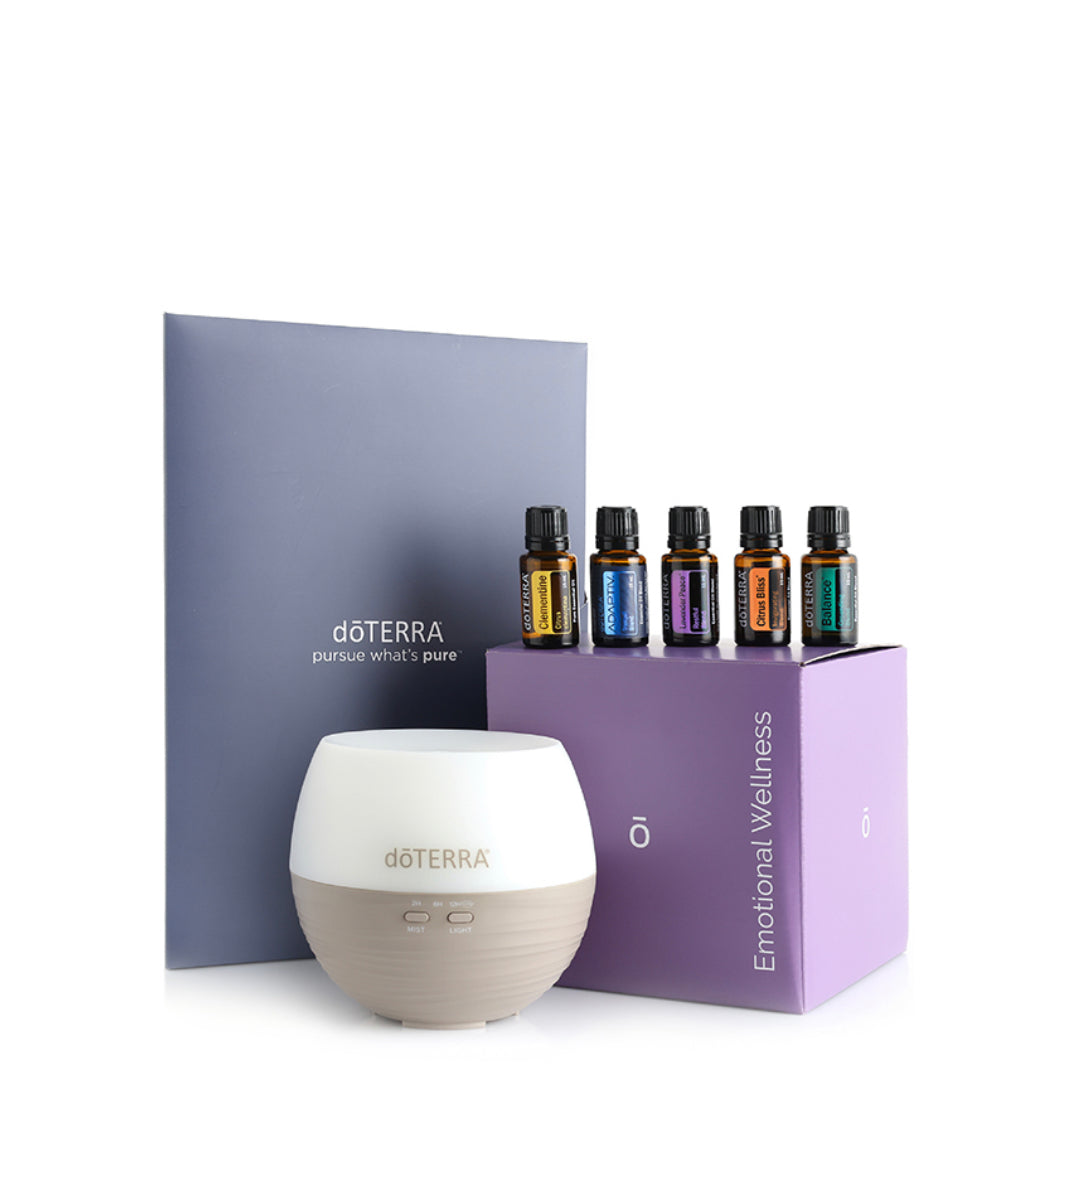 Doterra Emotional Wellness Starter Pack Kit of 5 Oils + Diffuser